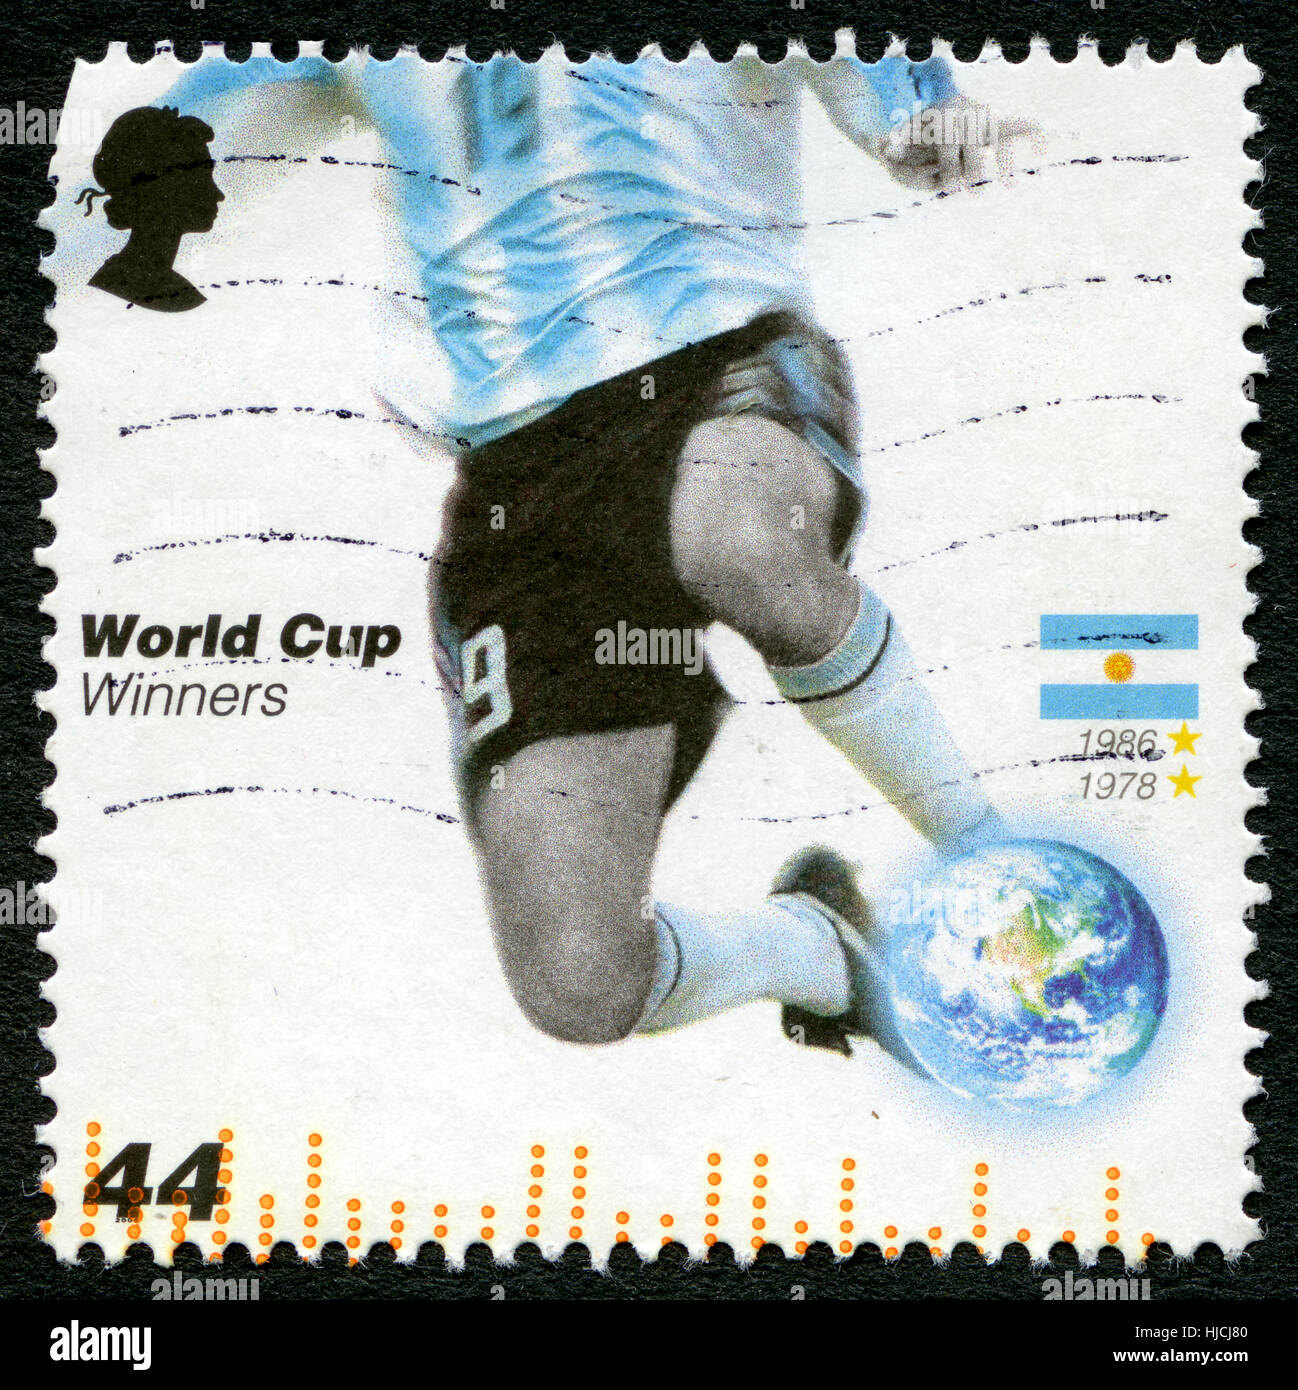 Regno Unito - circa 2006: un usato francobollo DAL REGNO UNITO, rilasciati per commemorare il passato della Coppa del Mondo di calcio Argentina vincitori, circa 2006. Foto Stock